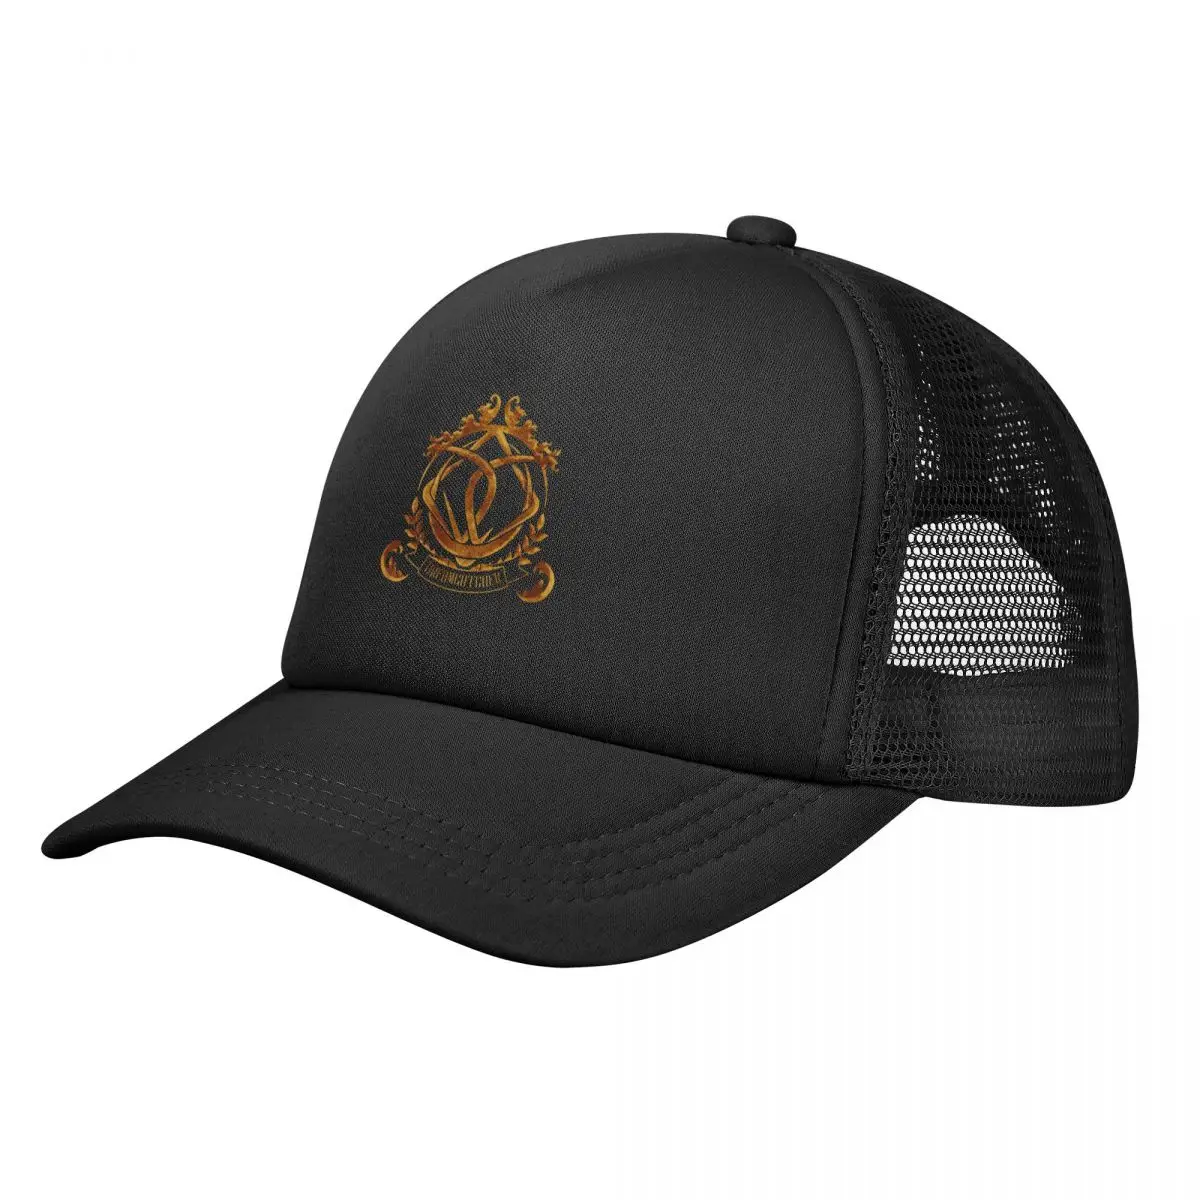 

Копия Ловец снов с логотипом «Follow us VISION», бумажная бейсболка для регби, роскошная мужская шляпа